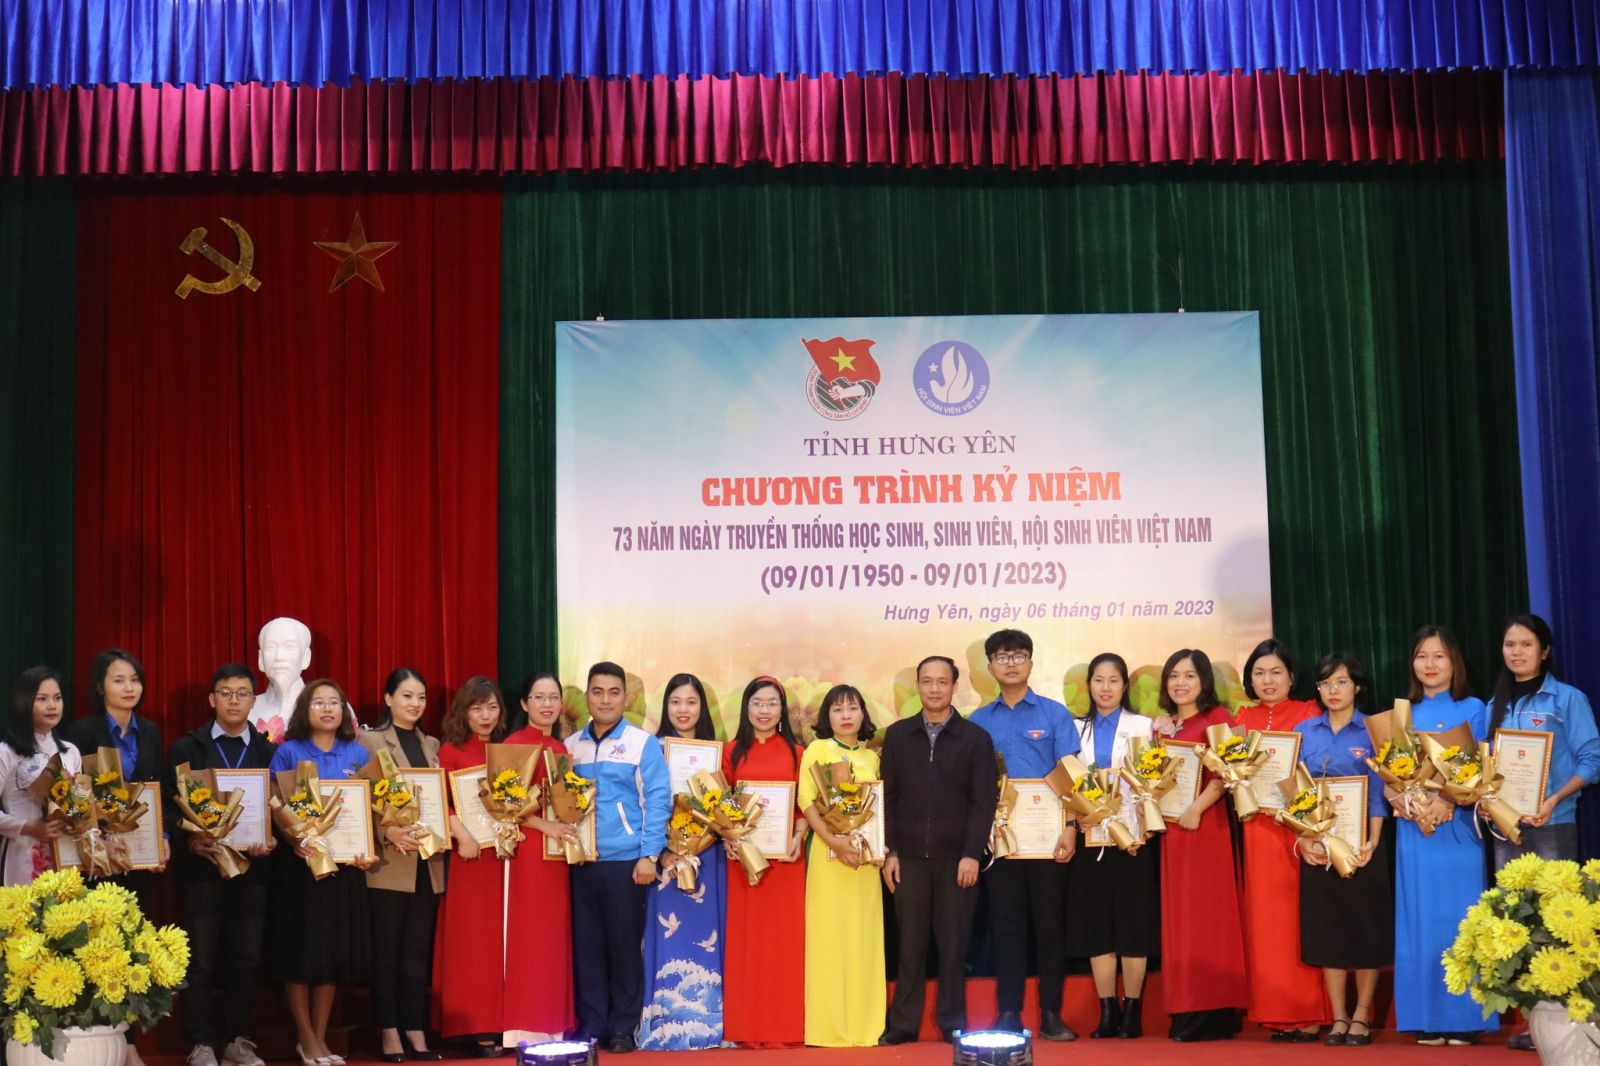 Kỷ niệm 73 năm Ngày truyền thống học sinh, sinh viên (HSSV) và Hội Sinh viên Việt Nam (09/01/1950 - 09/01/2023).